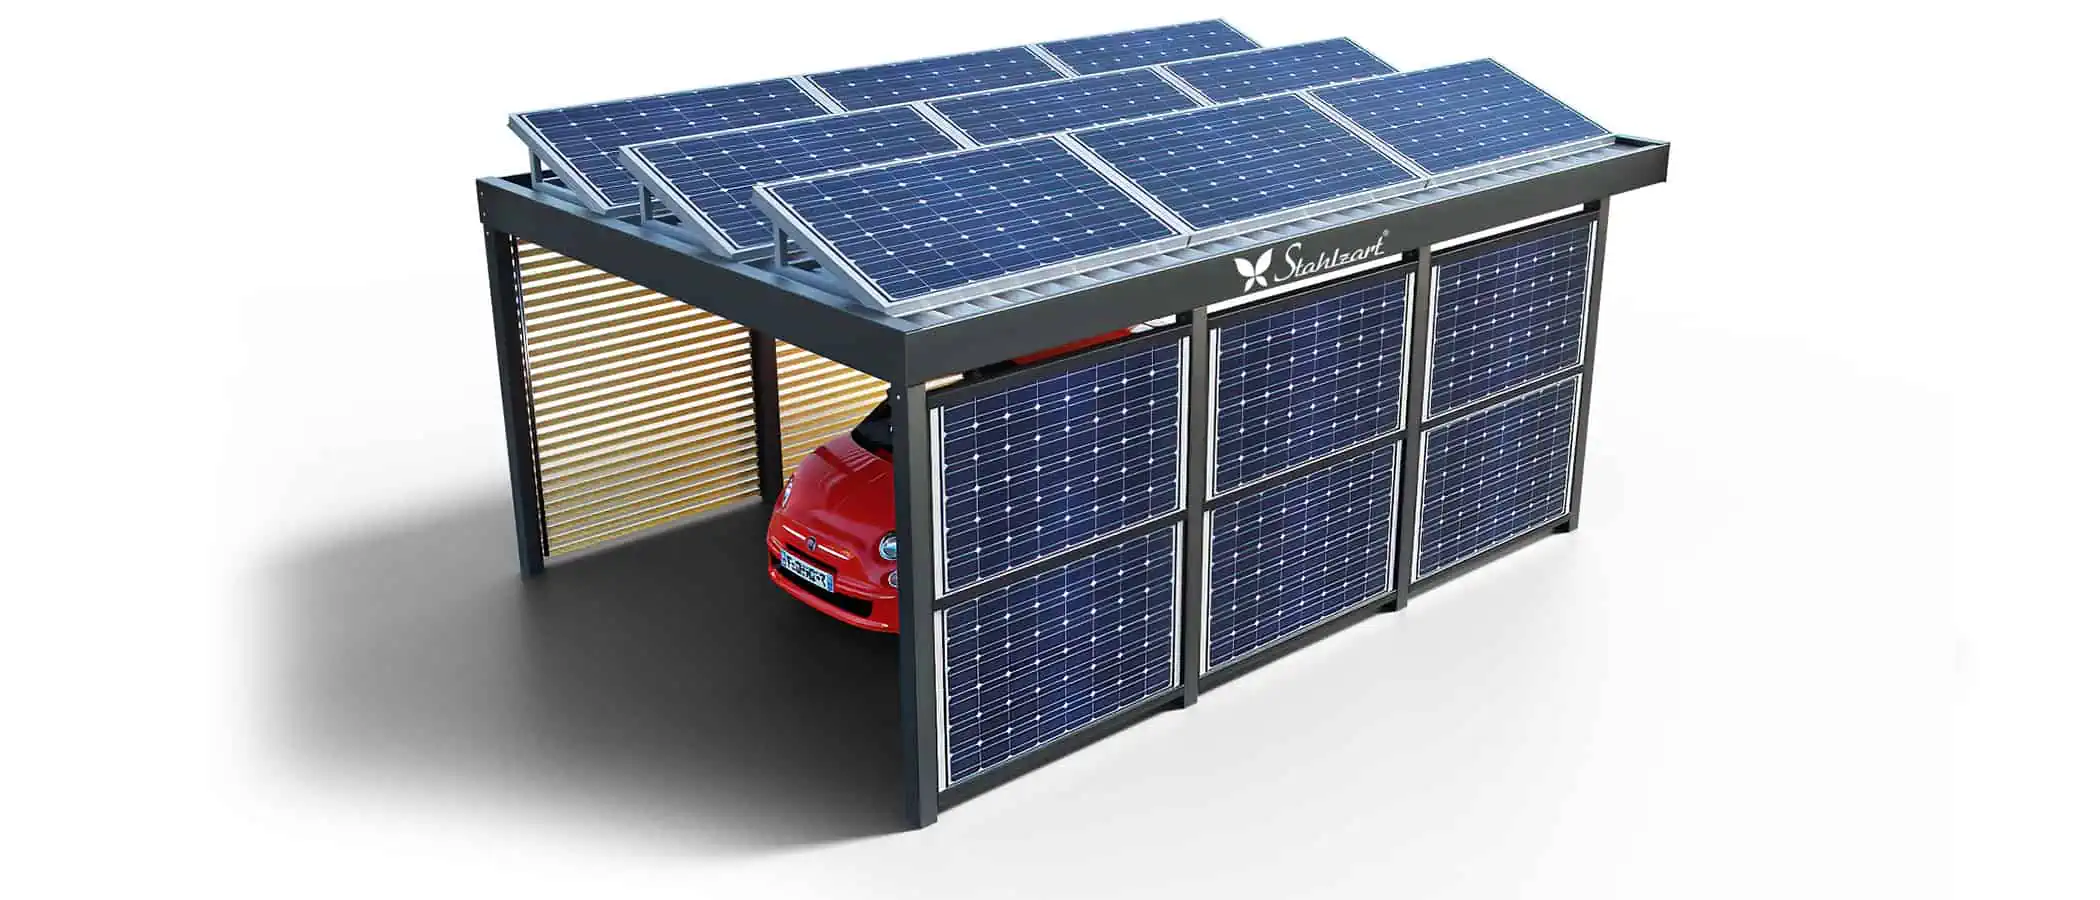 solar-carport-mit-flachdach-carports-pv-anlage-solaranlage-photovoltaik-garagen-garagendach-solarcarport-installation-solarmodulen-solarcarports-flaechen-dach-e-auto-loesung-metall-holz-stahlzart